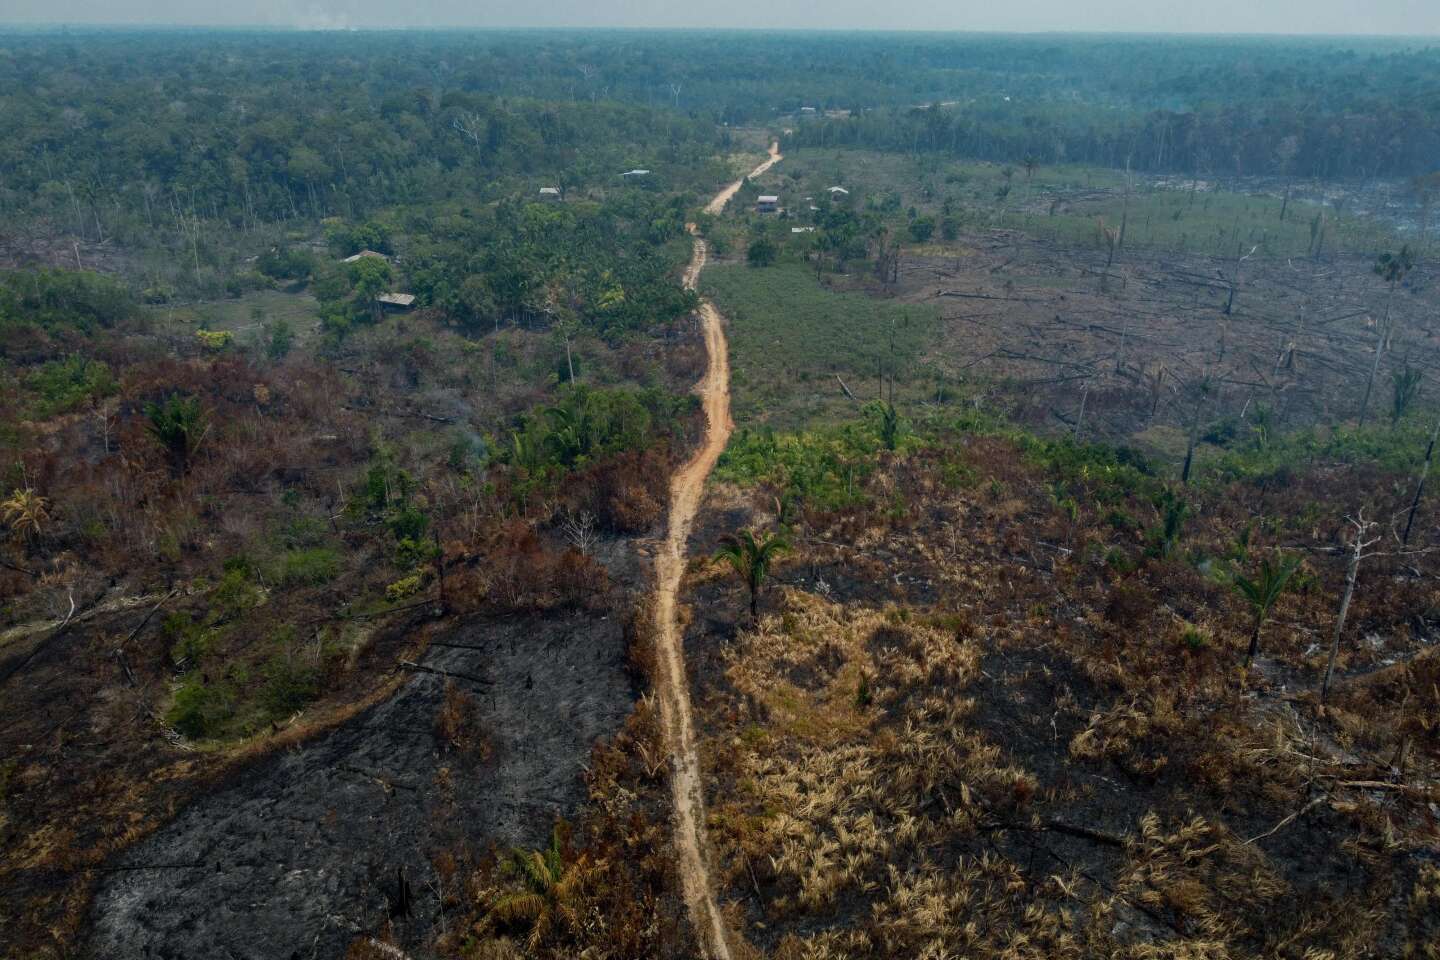 Le Brésil enregistre une baisse significative de la déforestation en Amazonie moins d’un an après le retour de Lula au pouvoir